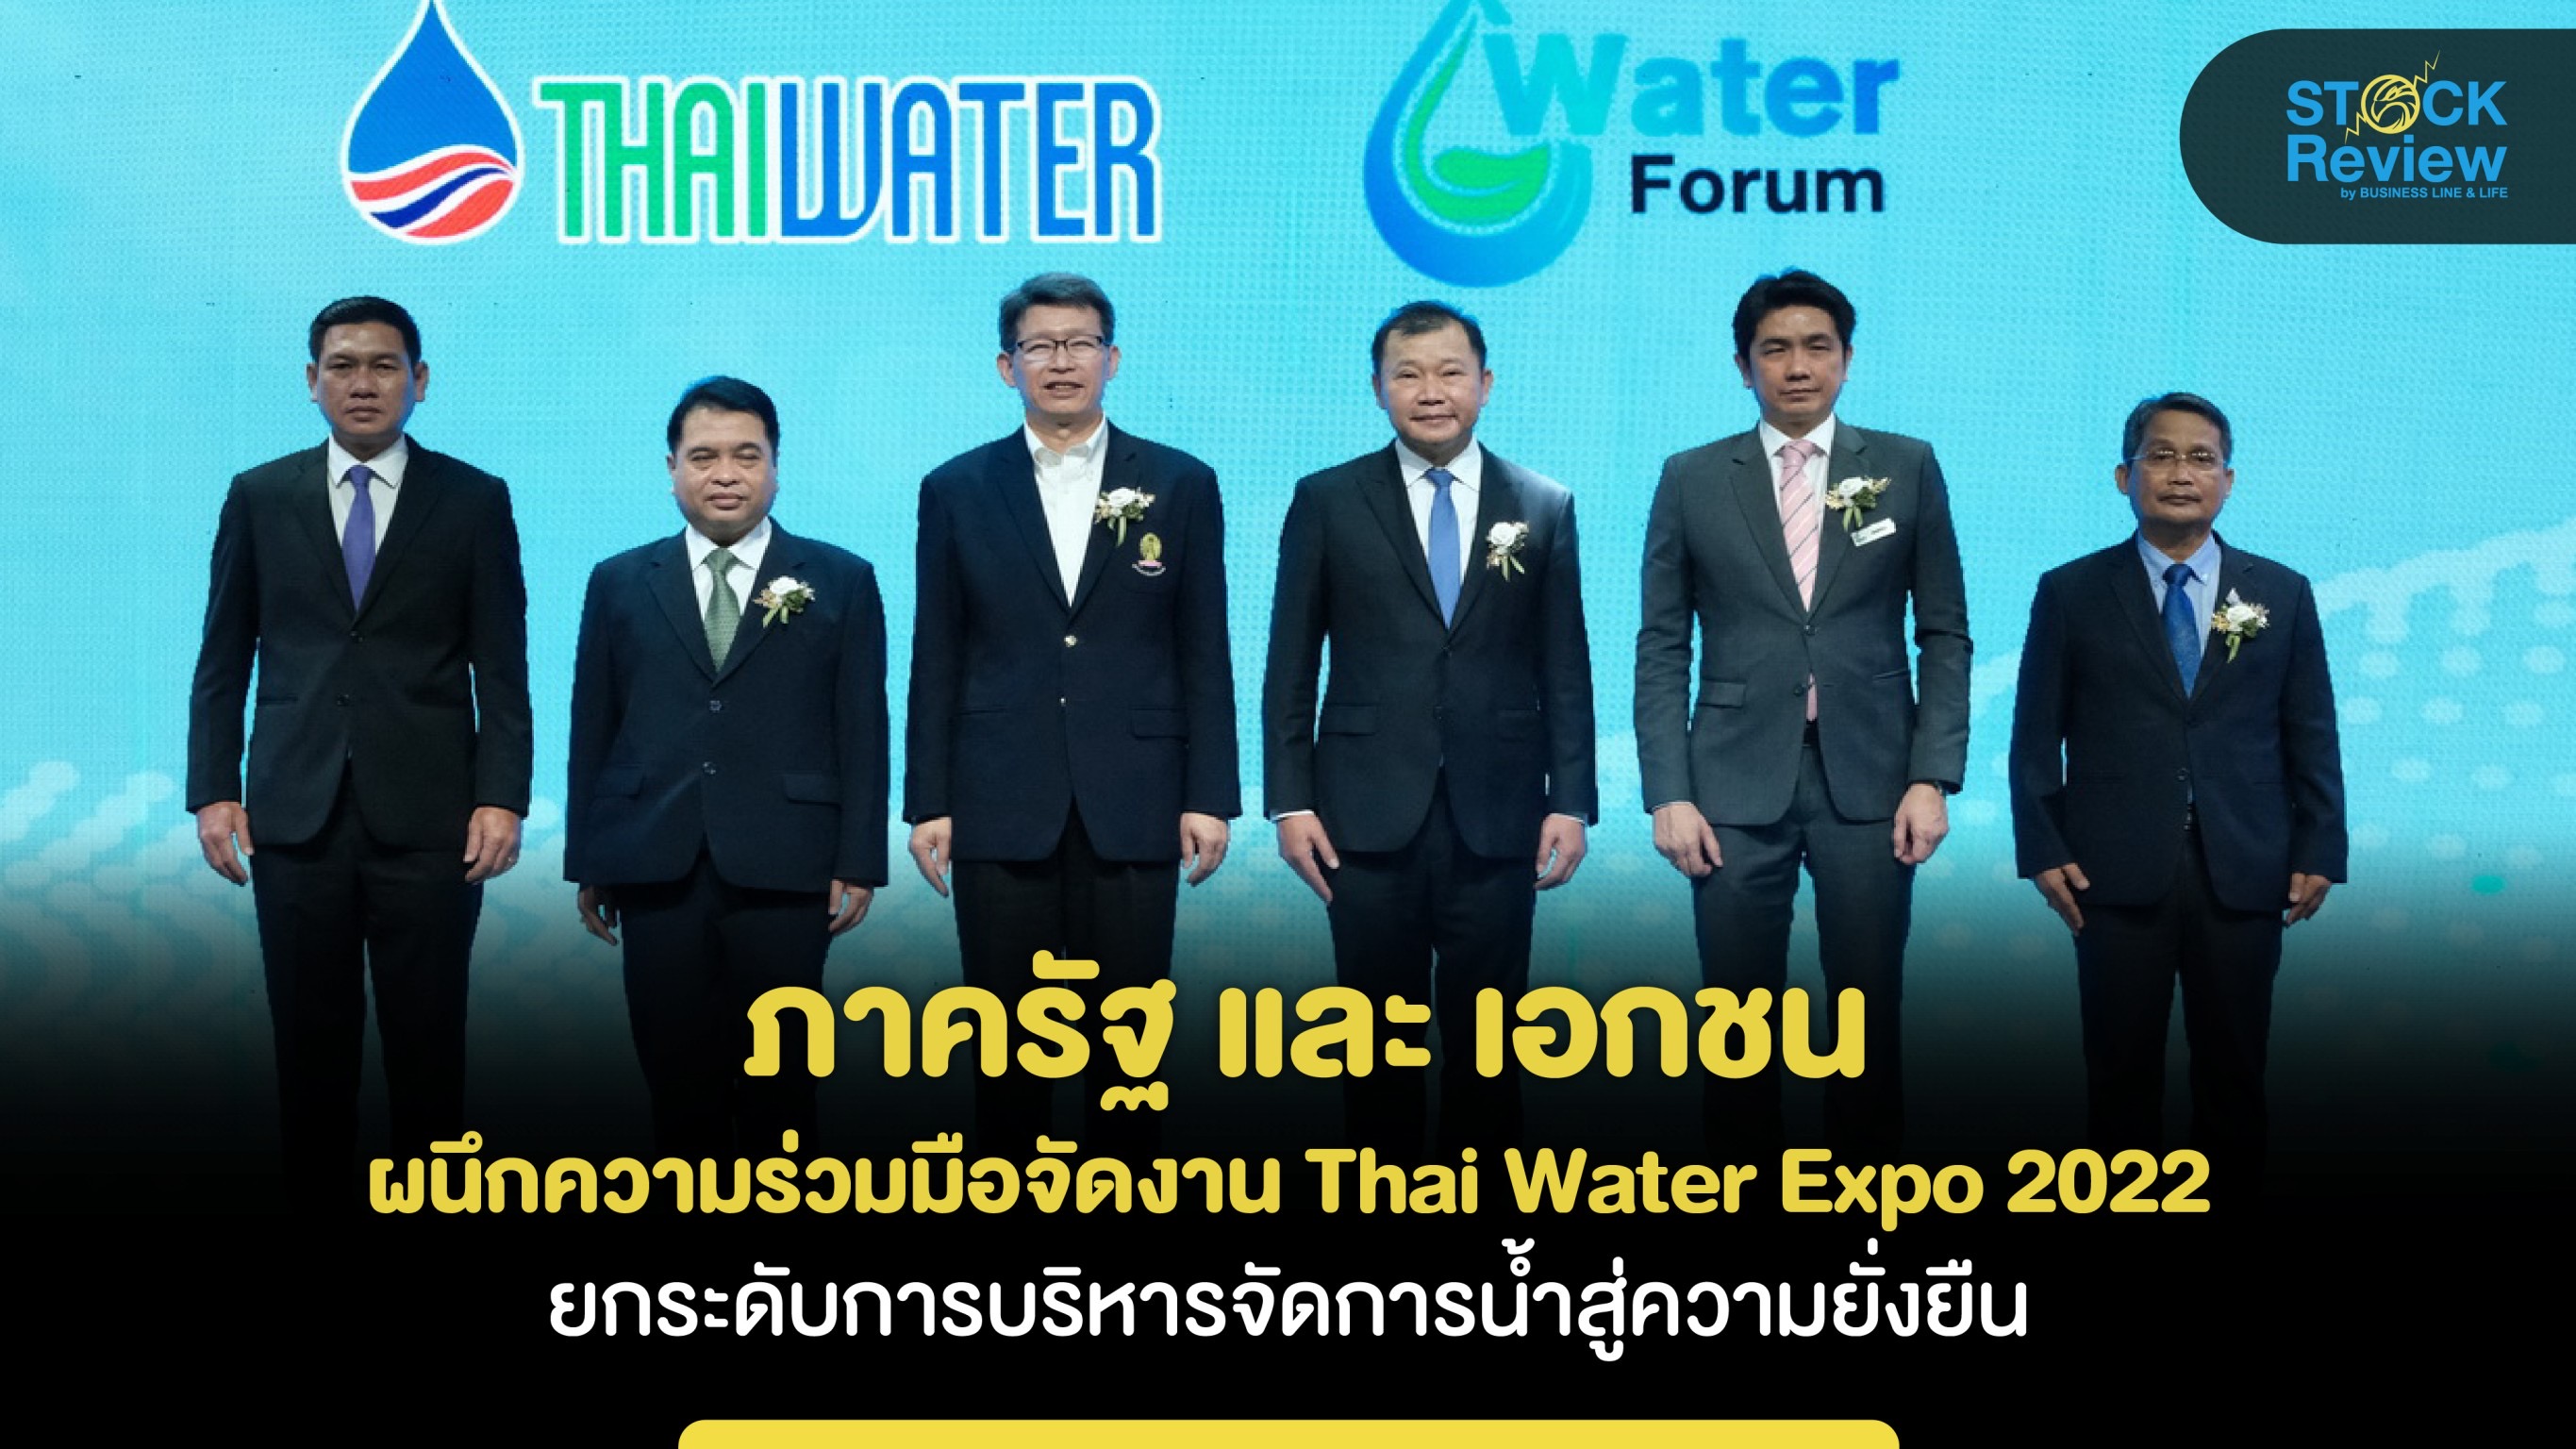 ภาครัฐ - เอกชน ผนึกความร่วมมือจัดงาน Thai Water Expo 2022 ยกระดับการบริหารจัดการน้ำสู่ความยั่งยืน